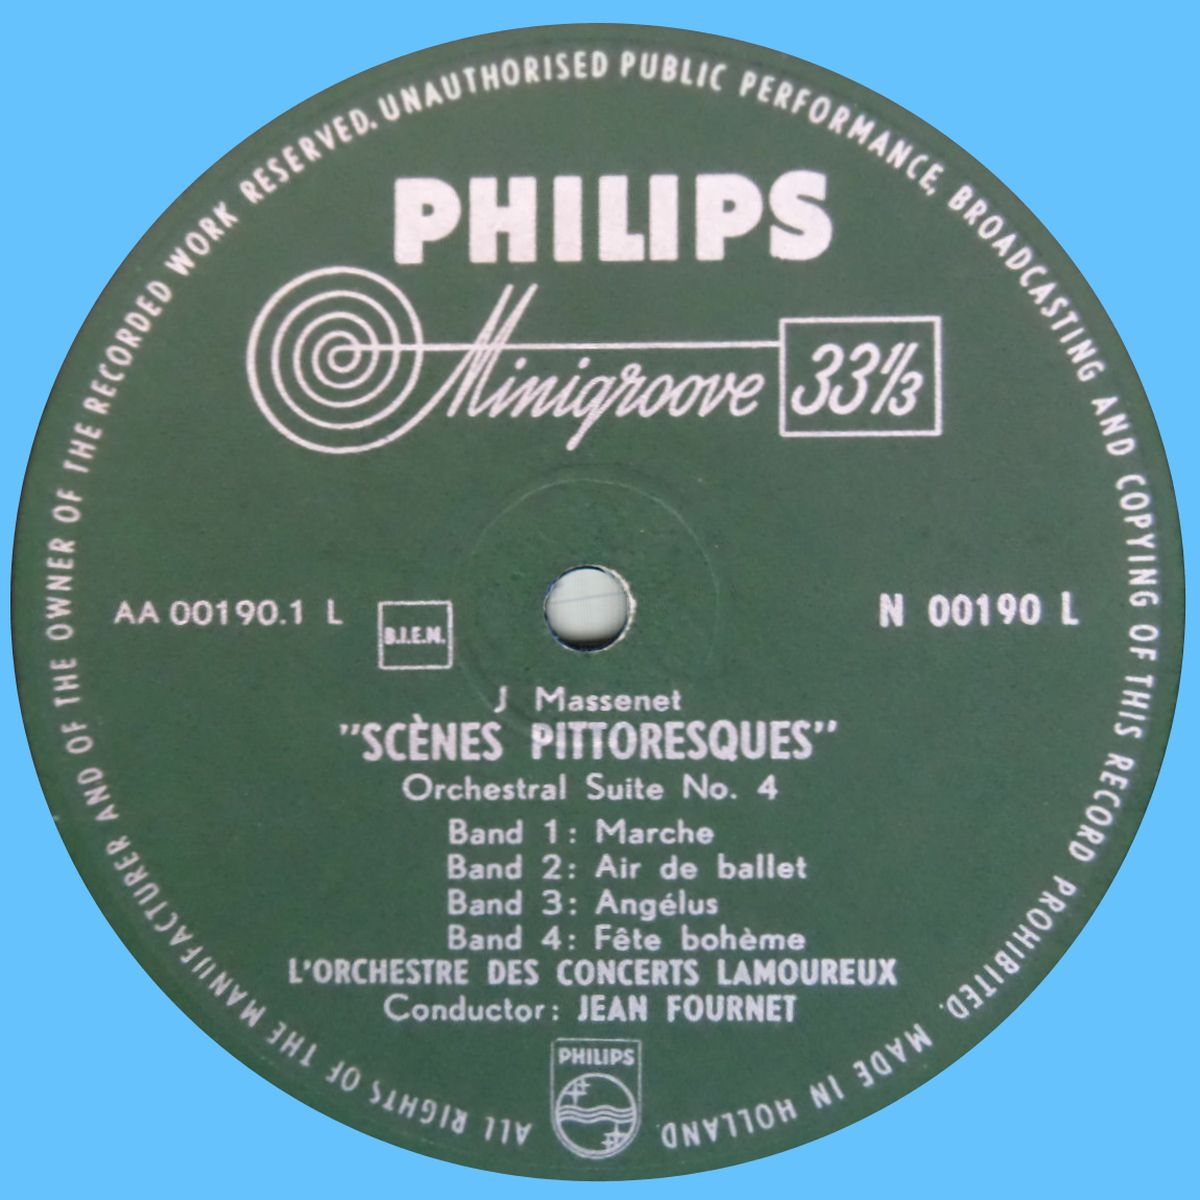 Philips N 00190 L Label 1 65C2FC